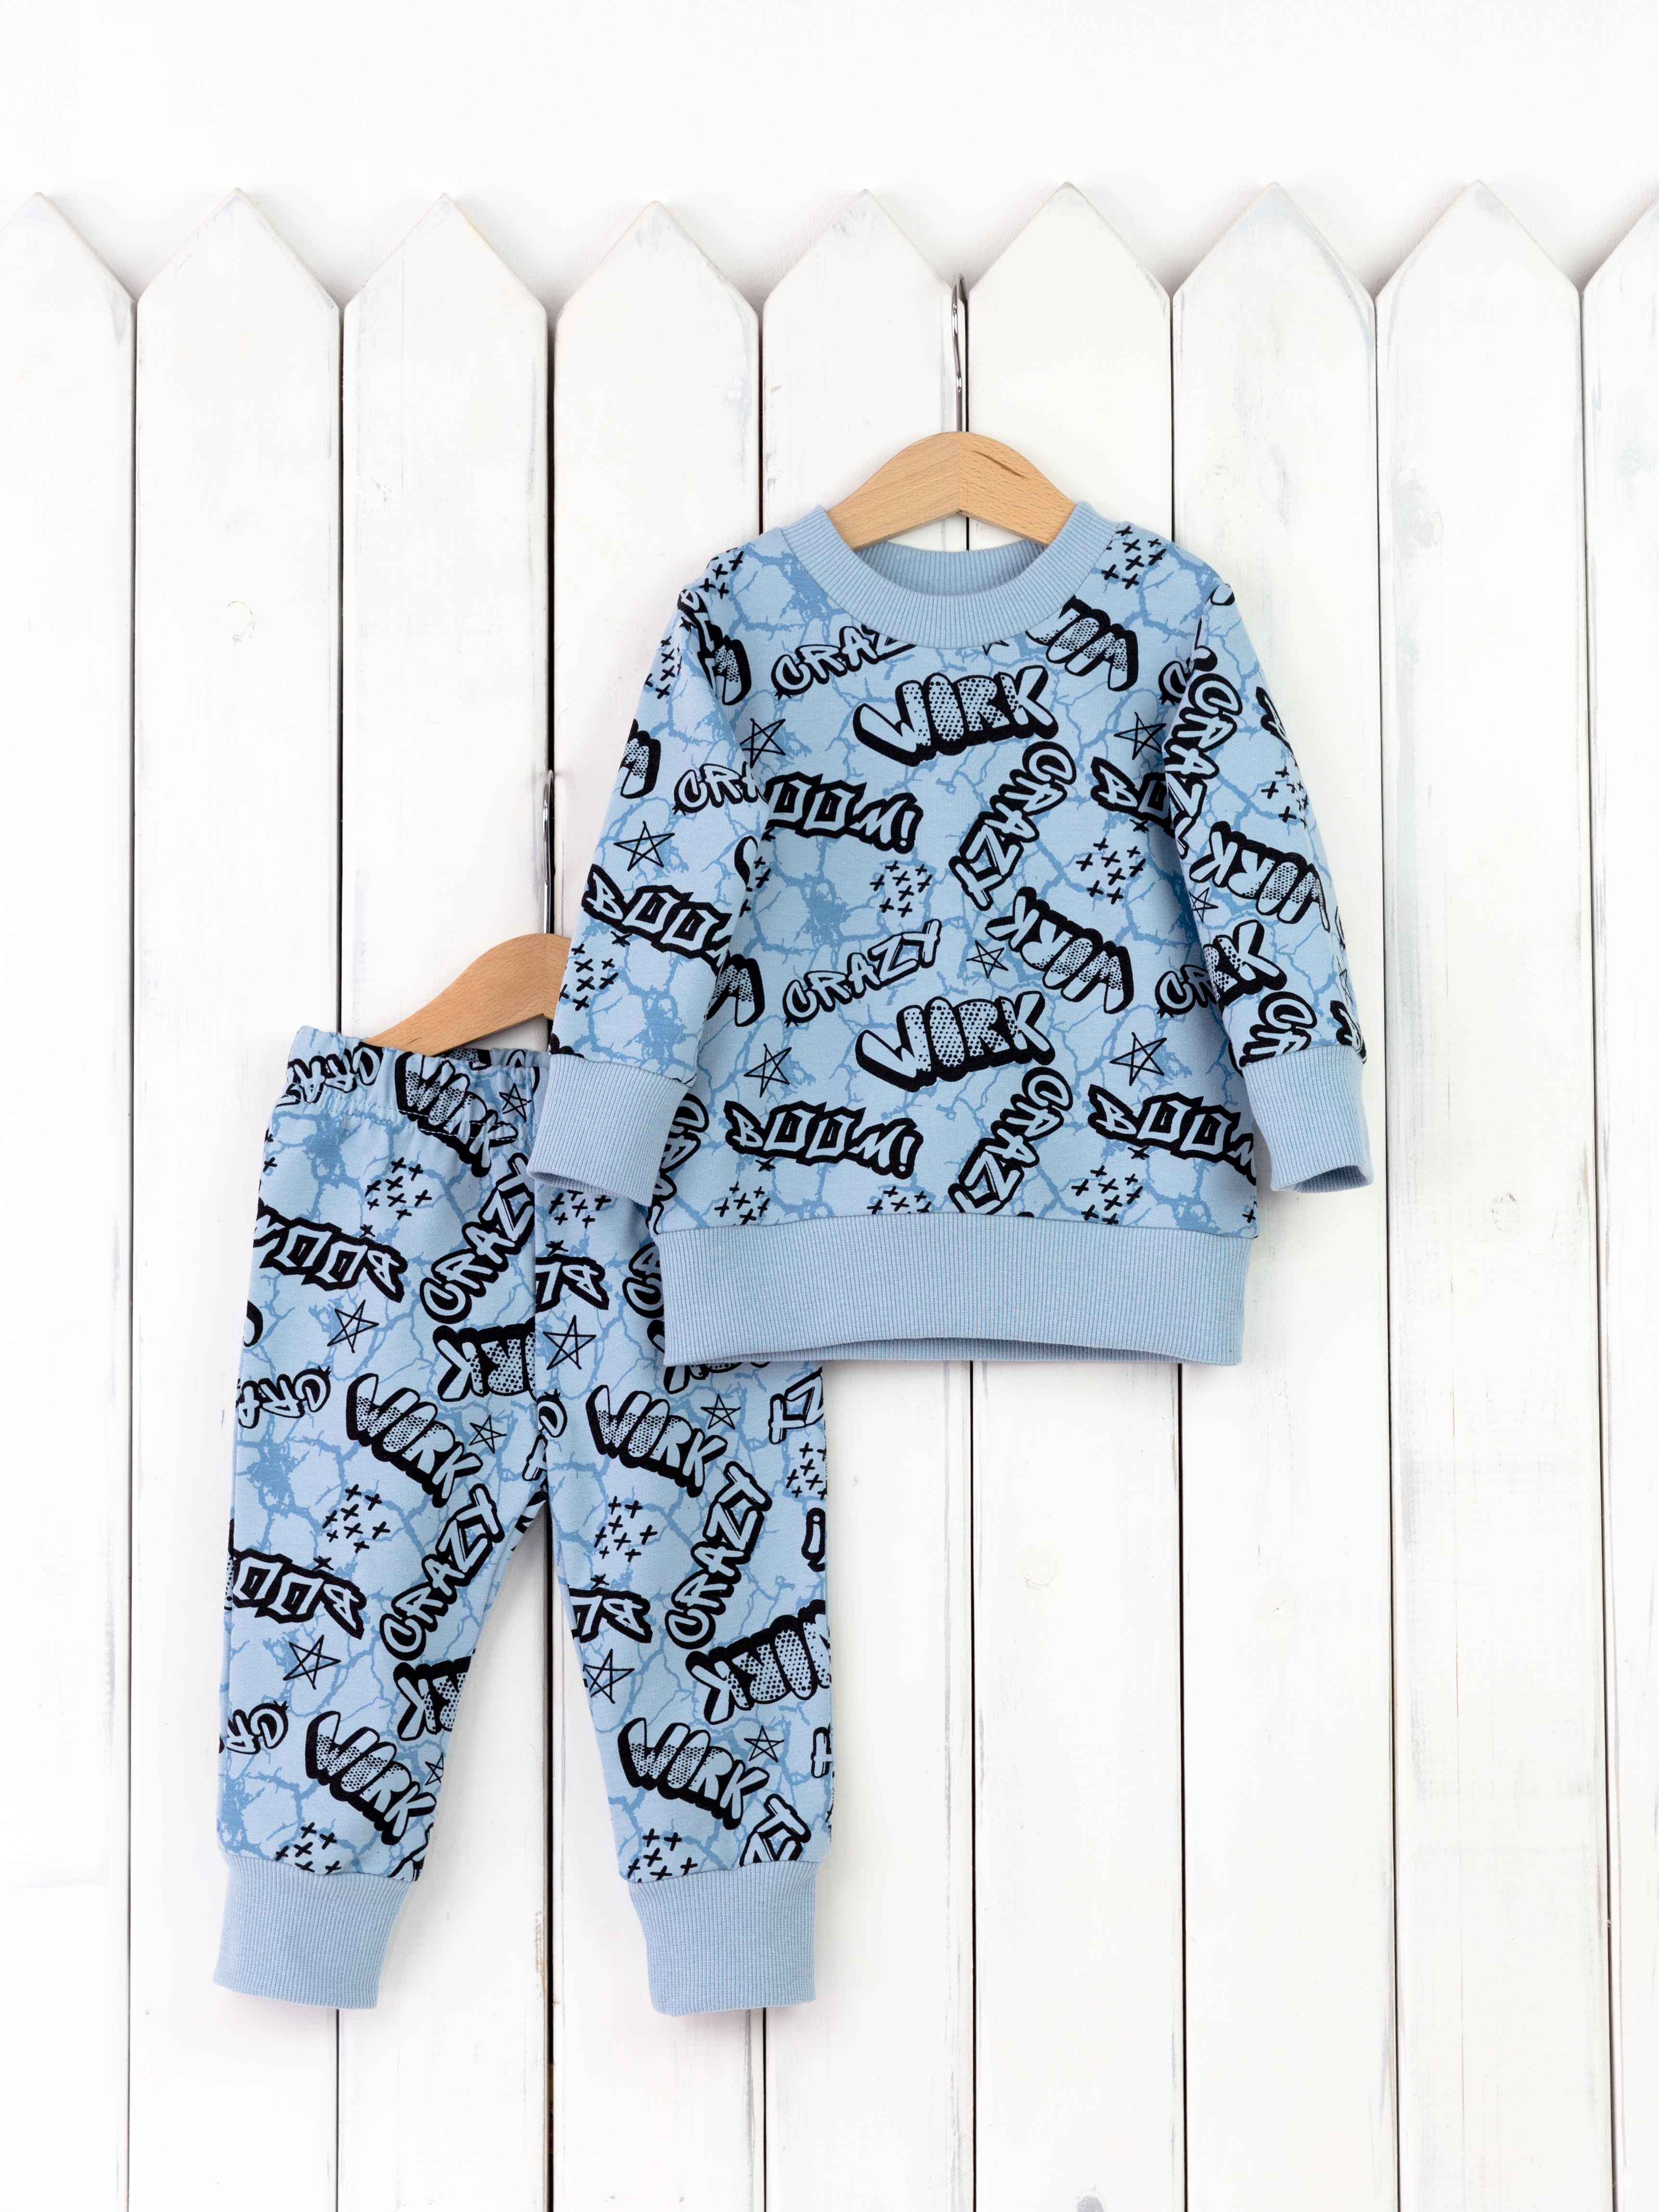 КД402/6-Ф Комплект детский р.86 джемпер+брюки/надписи на голубом Бэби Бум - Ижевск 